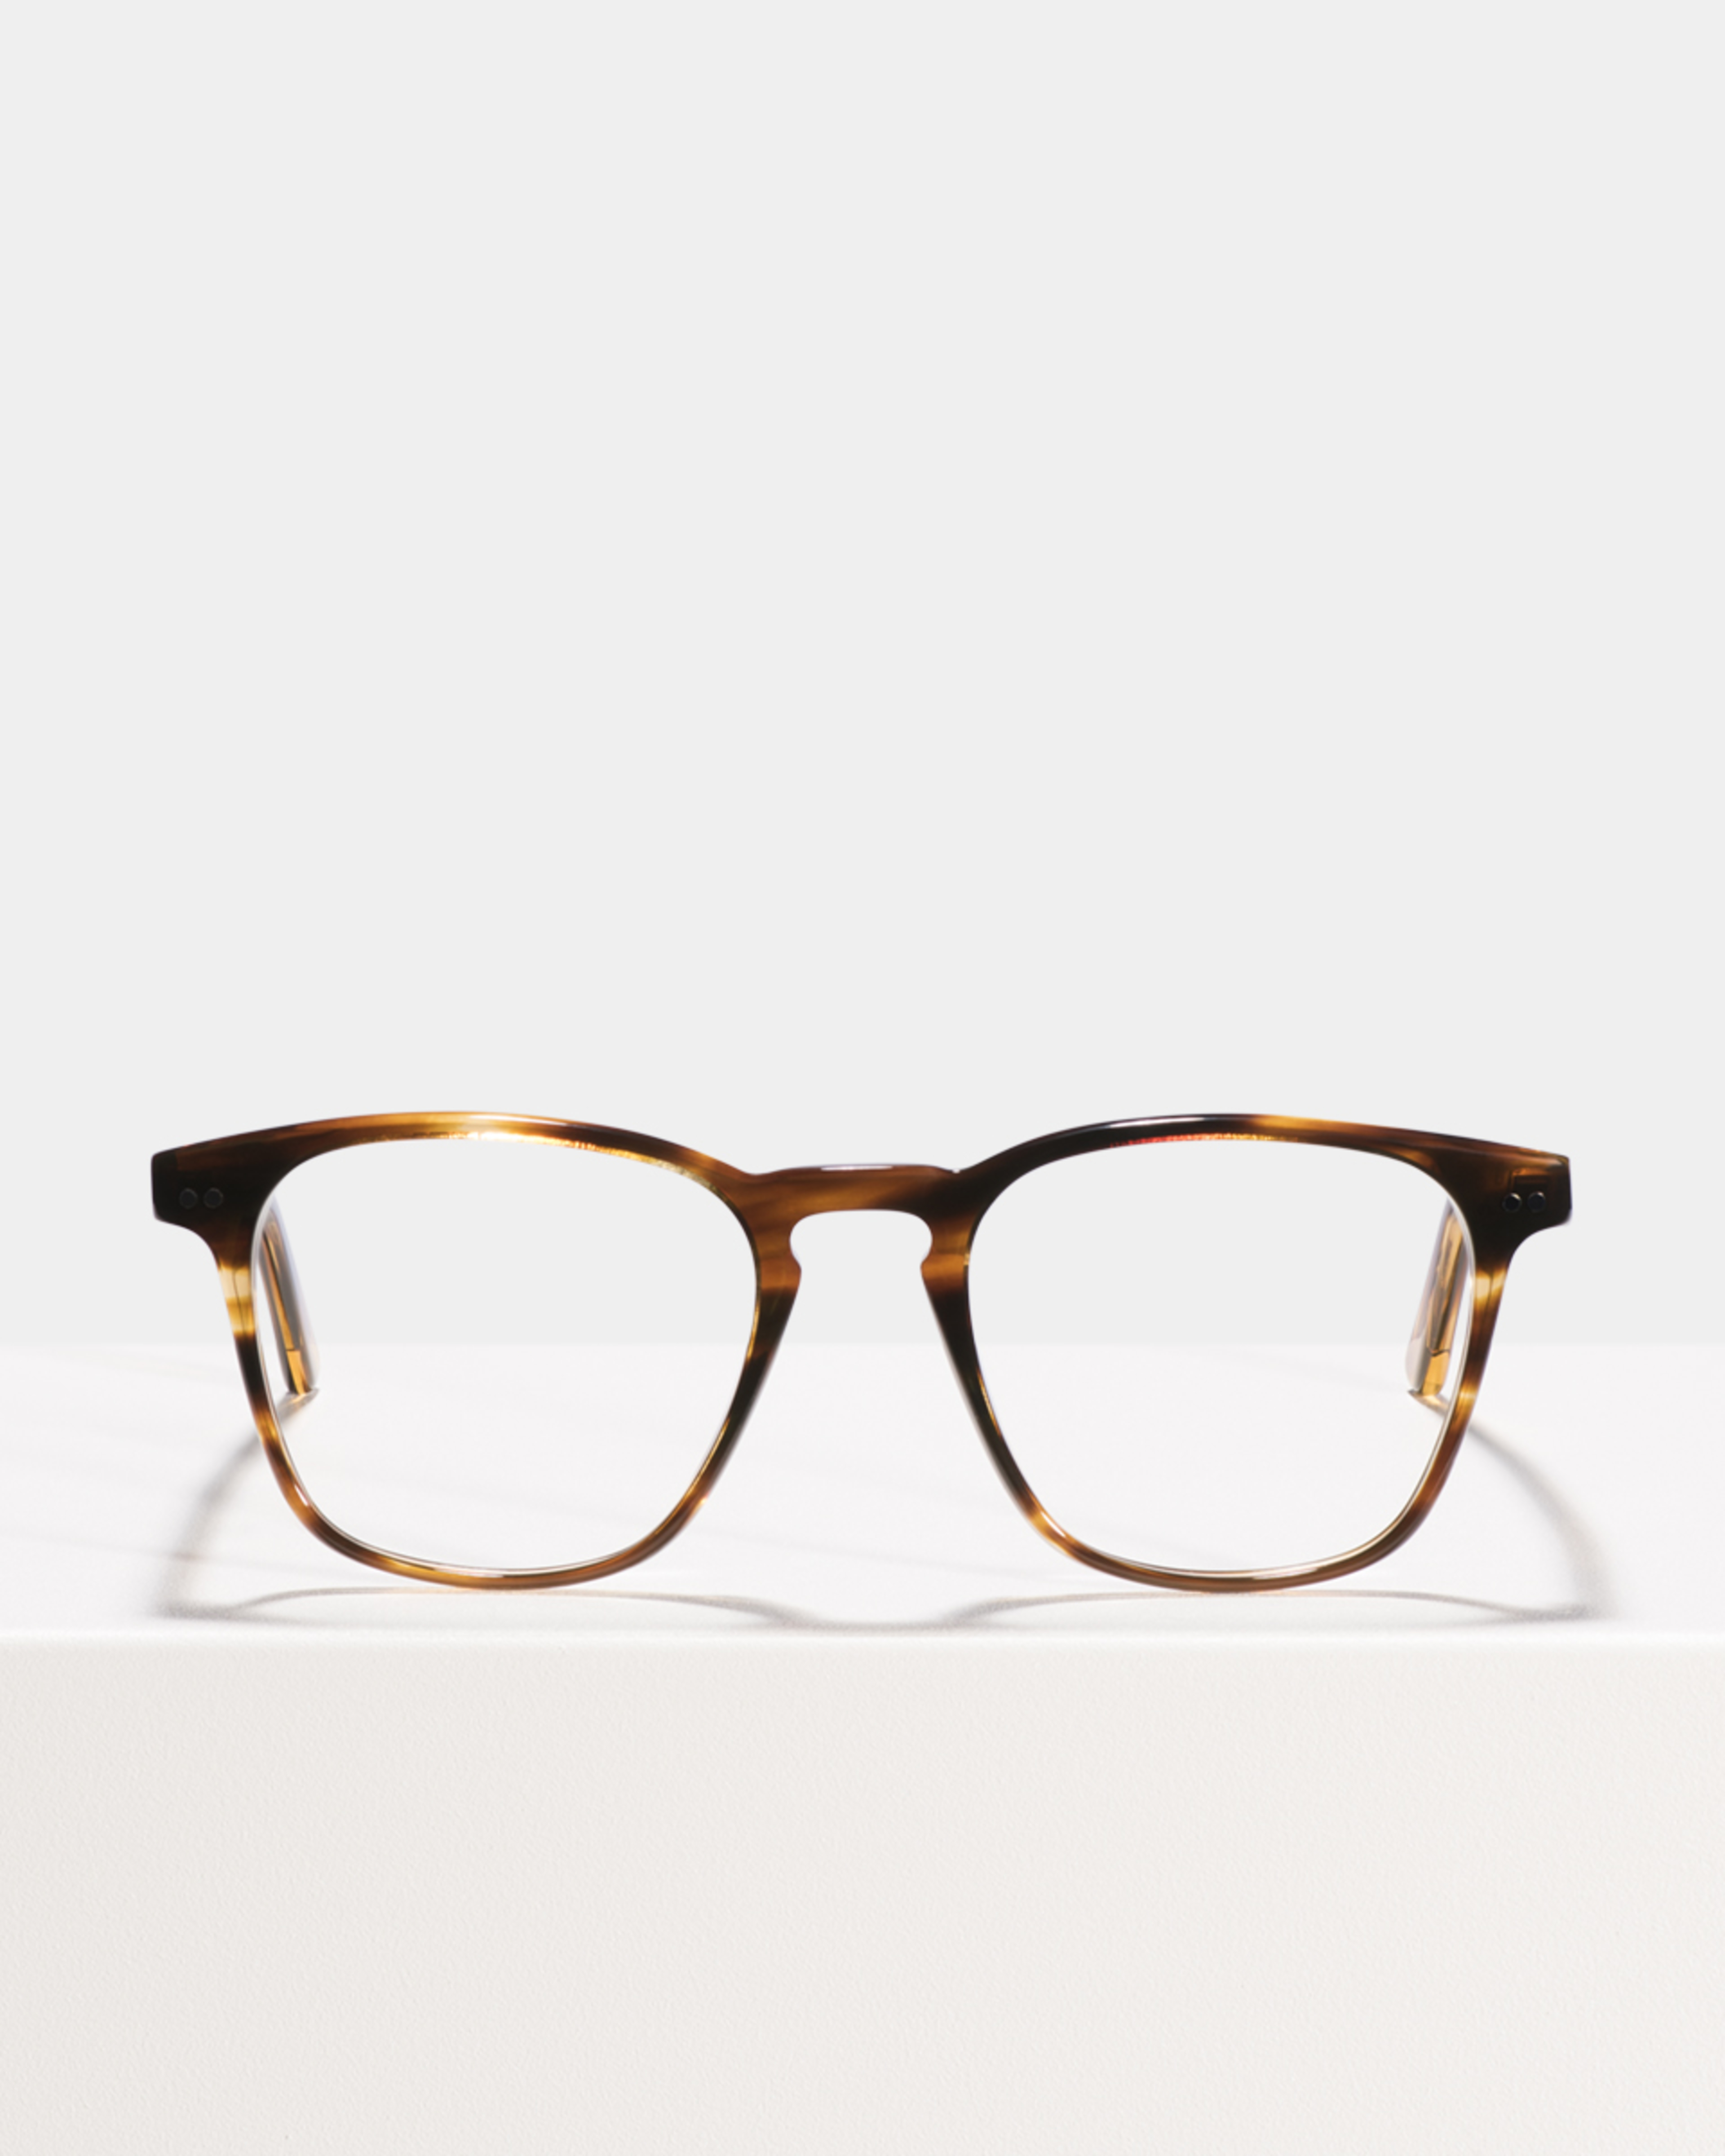 Ace & Tate Glasses | quadratisch Acetat in Braun, Orange